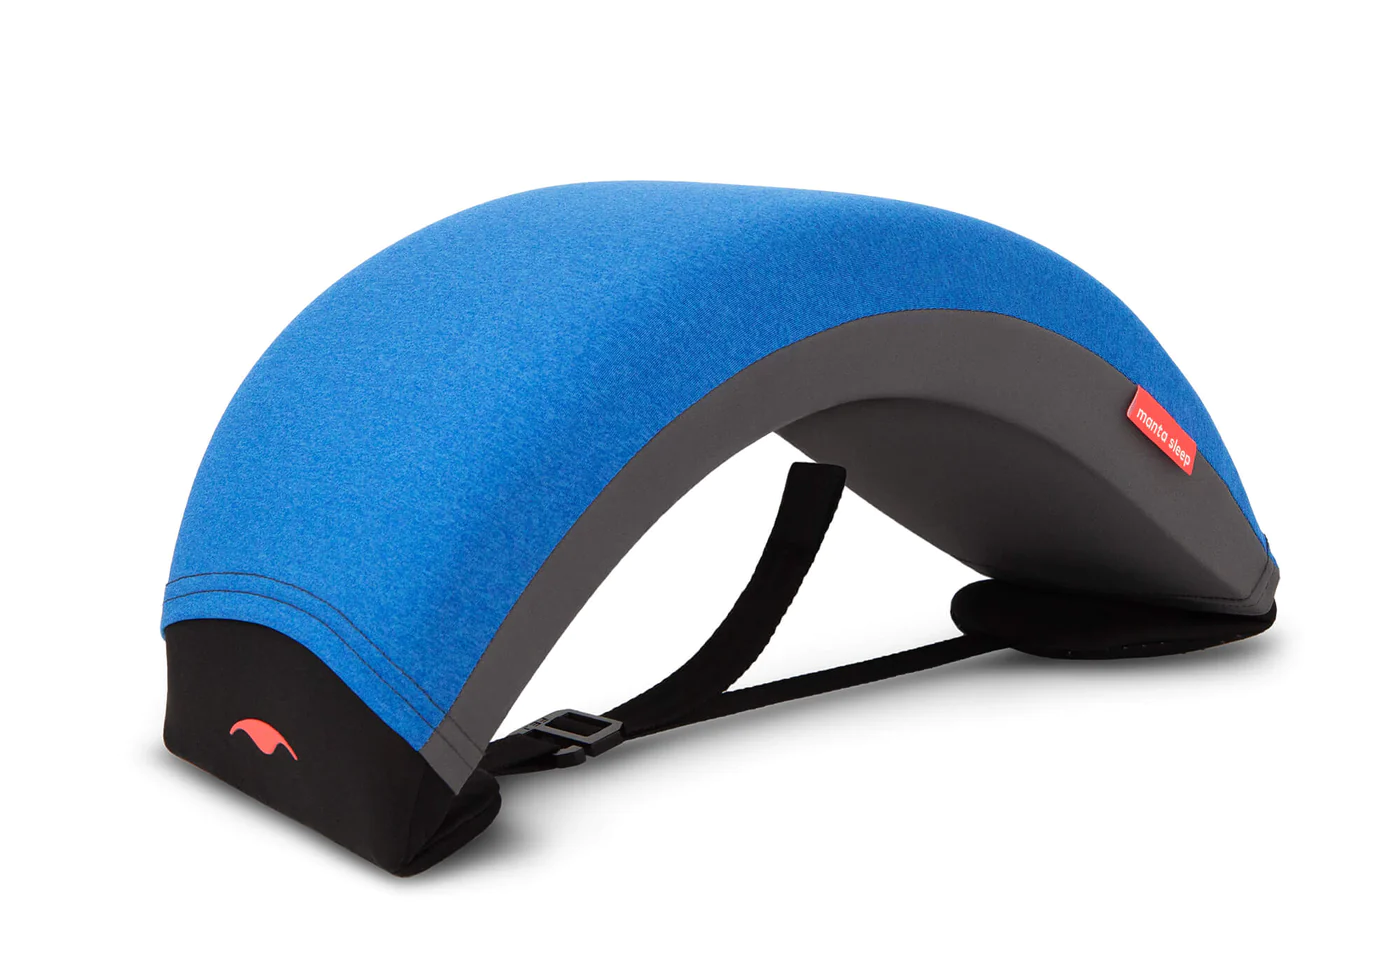 A blue nap pillow with an arc design.